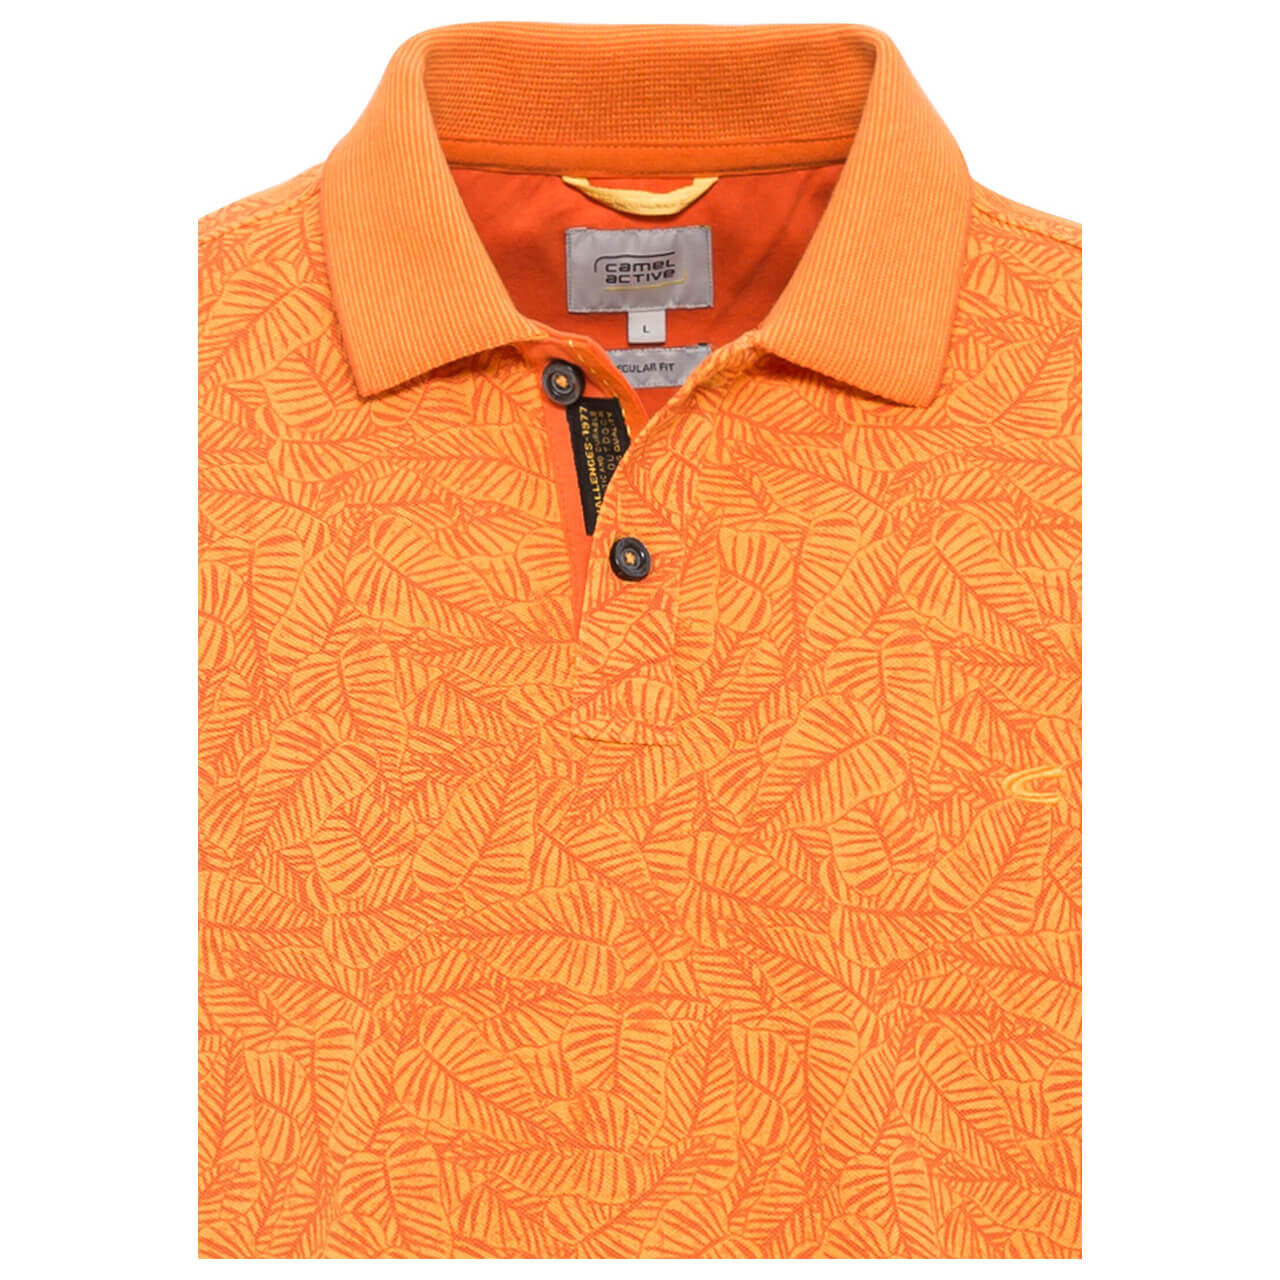 Camel active Poloshirt für Herren in Orange mit Print, FarbNr.: 52